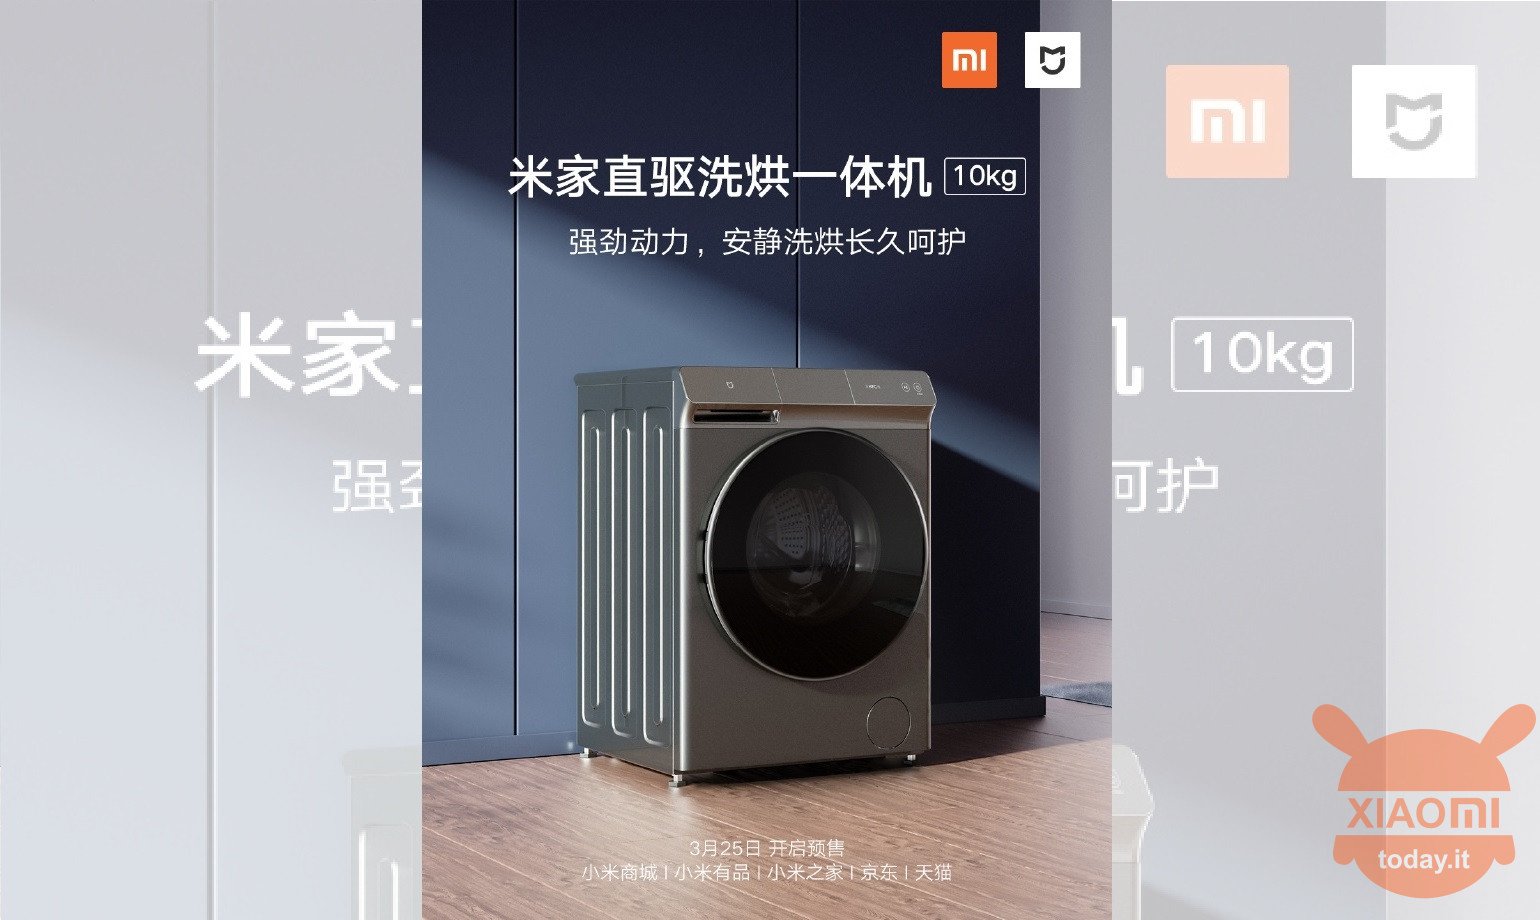 Xiaomi Mijia Direct Drive Washing machine 10kg